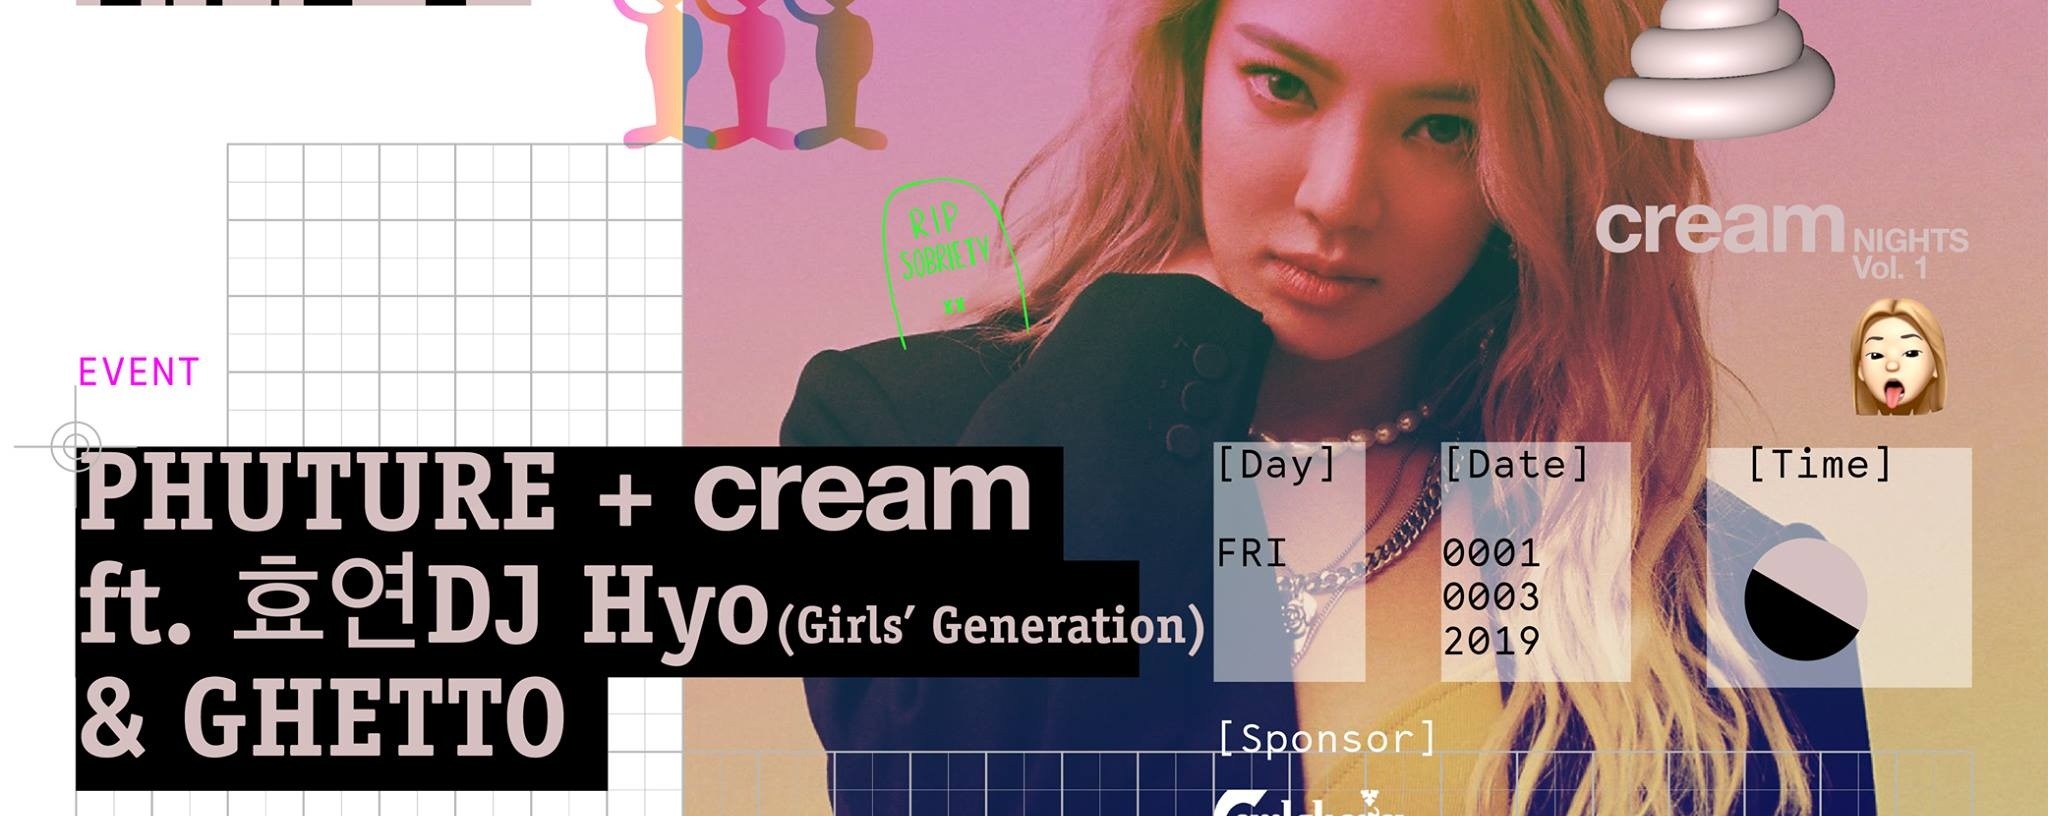 Phuture + cream ft. 효연 DJ HYO (Girls' Generation) & Ghetto